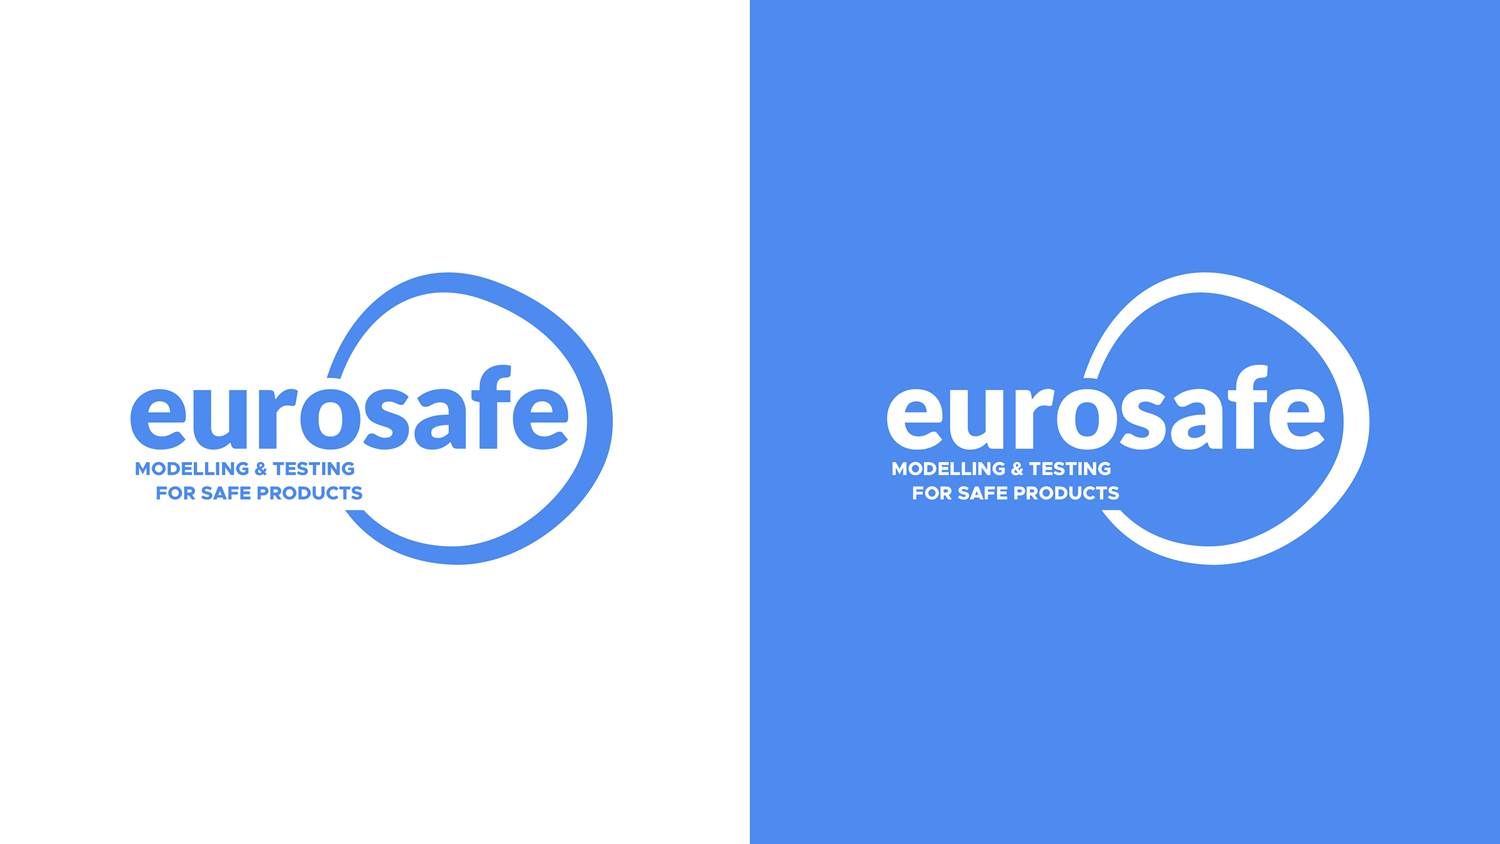 Nouveau logo, nouvelle identité visuelle pour Eurosafe !